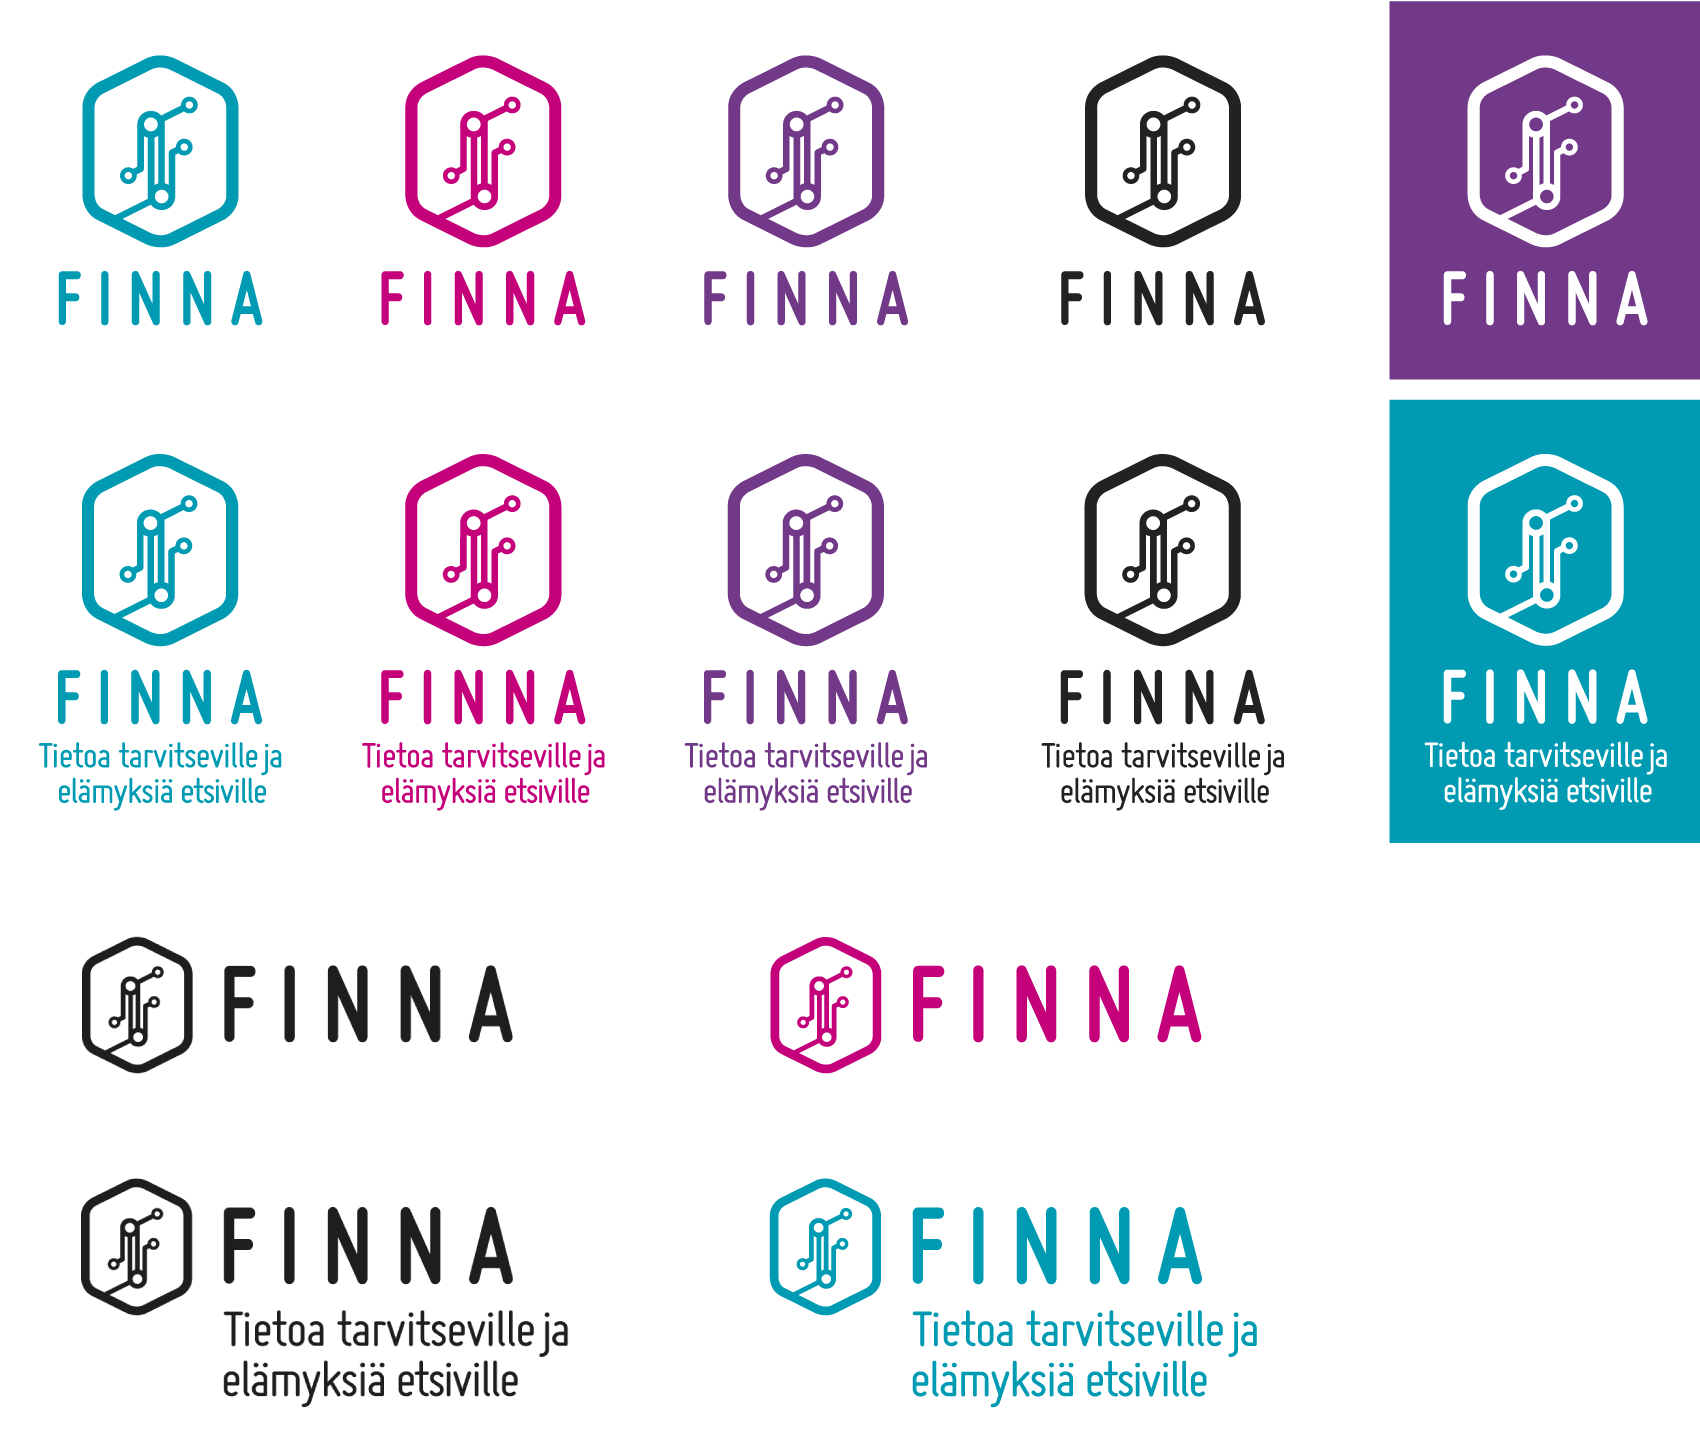 Esimerkkejä Finna-tunnuksen eri versioista ja värivariaatioista.